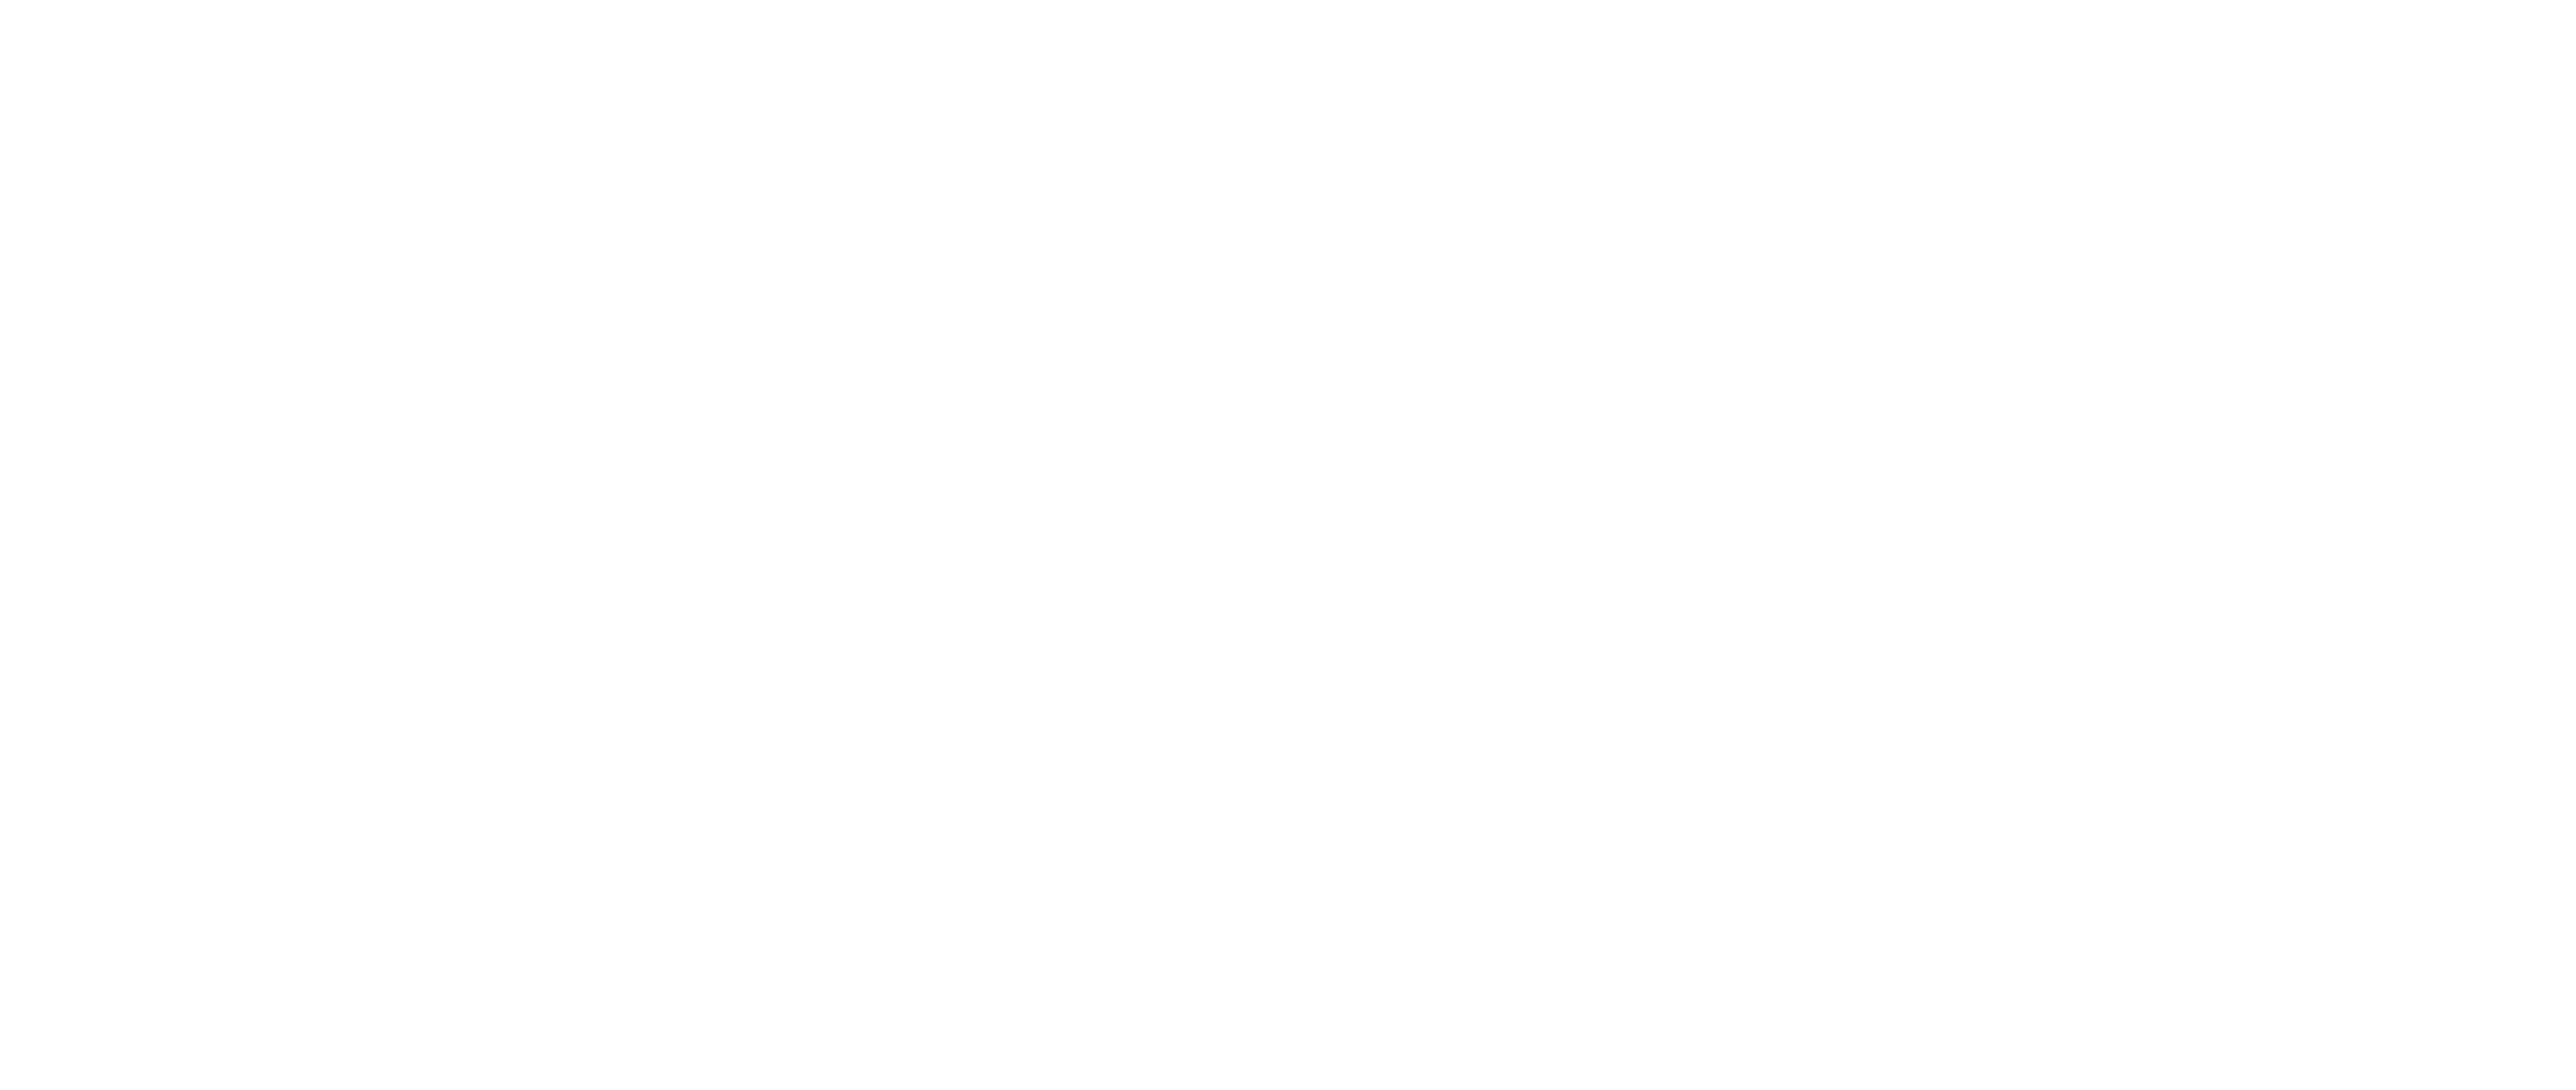 voxel logo